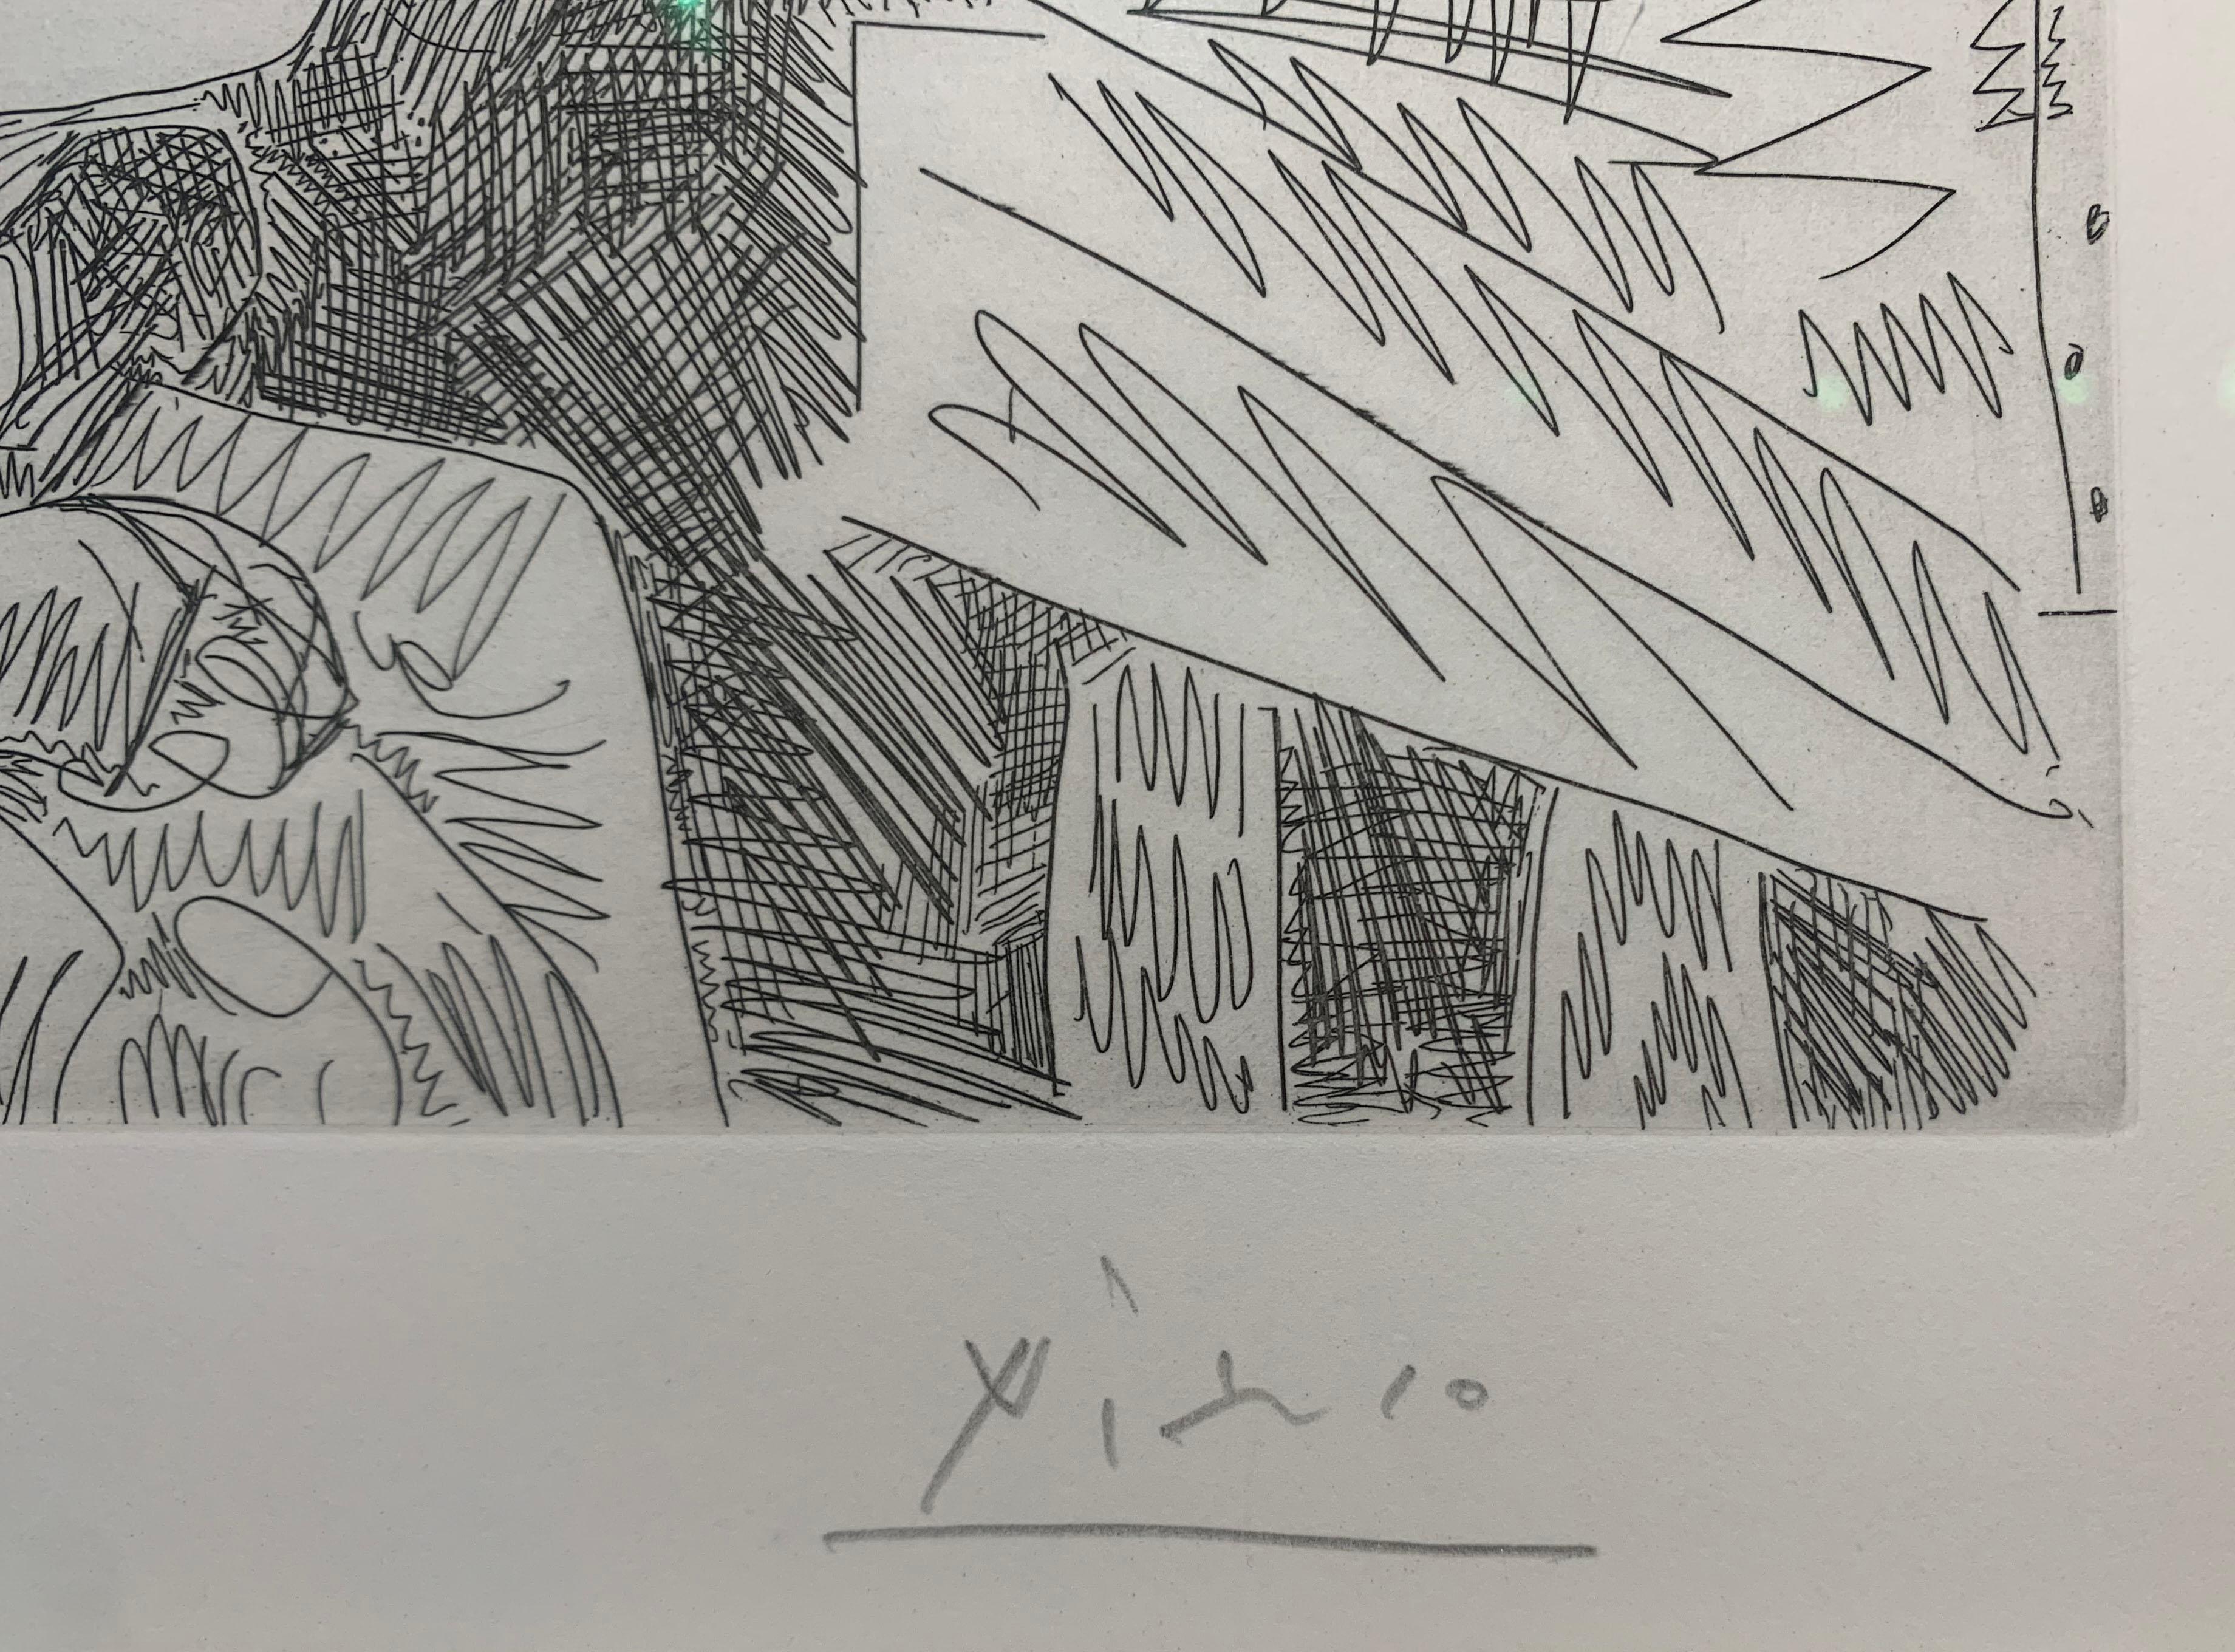 Gravure originale, technique de l'eau-forte et pointe sèche, 1968, tirée à 50 exemplaires numérotée et signée au crayon par l'artiste.
Encadrée avec un cadre en bois et un verre musée.
Numéro 35/50.
Ref: Bloch N° 1826.